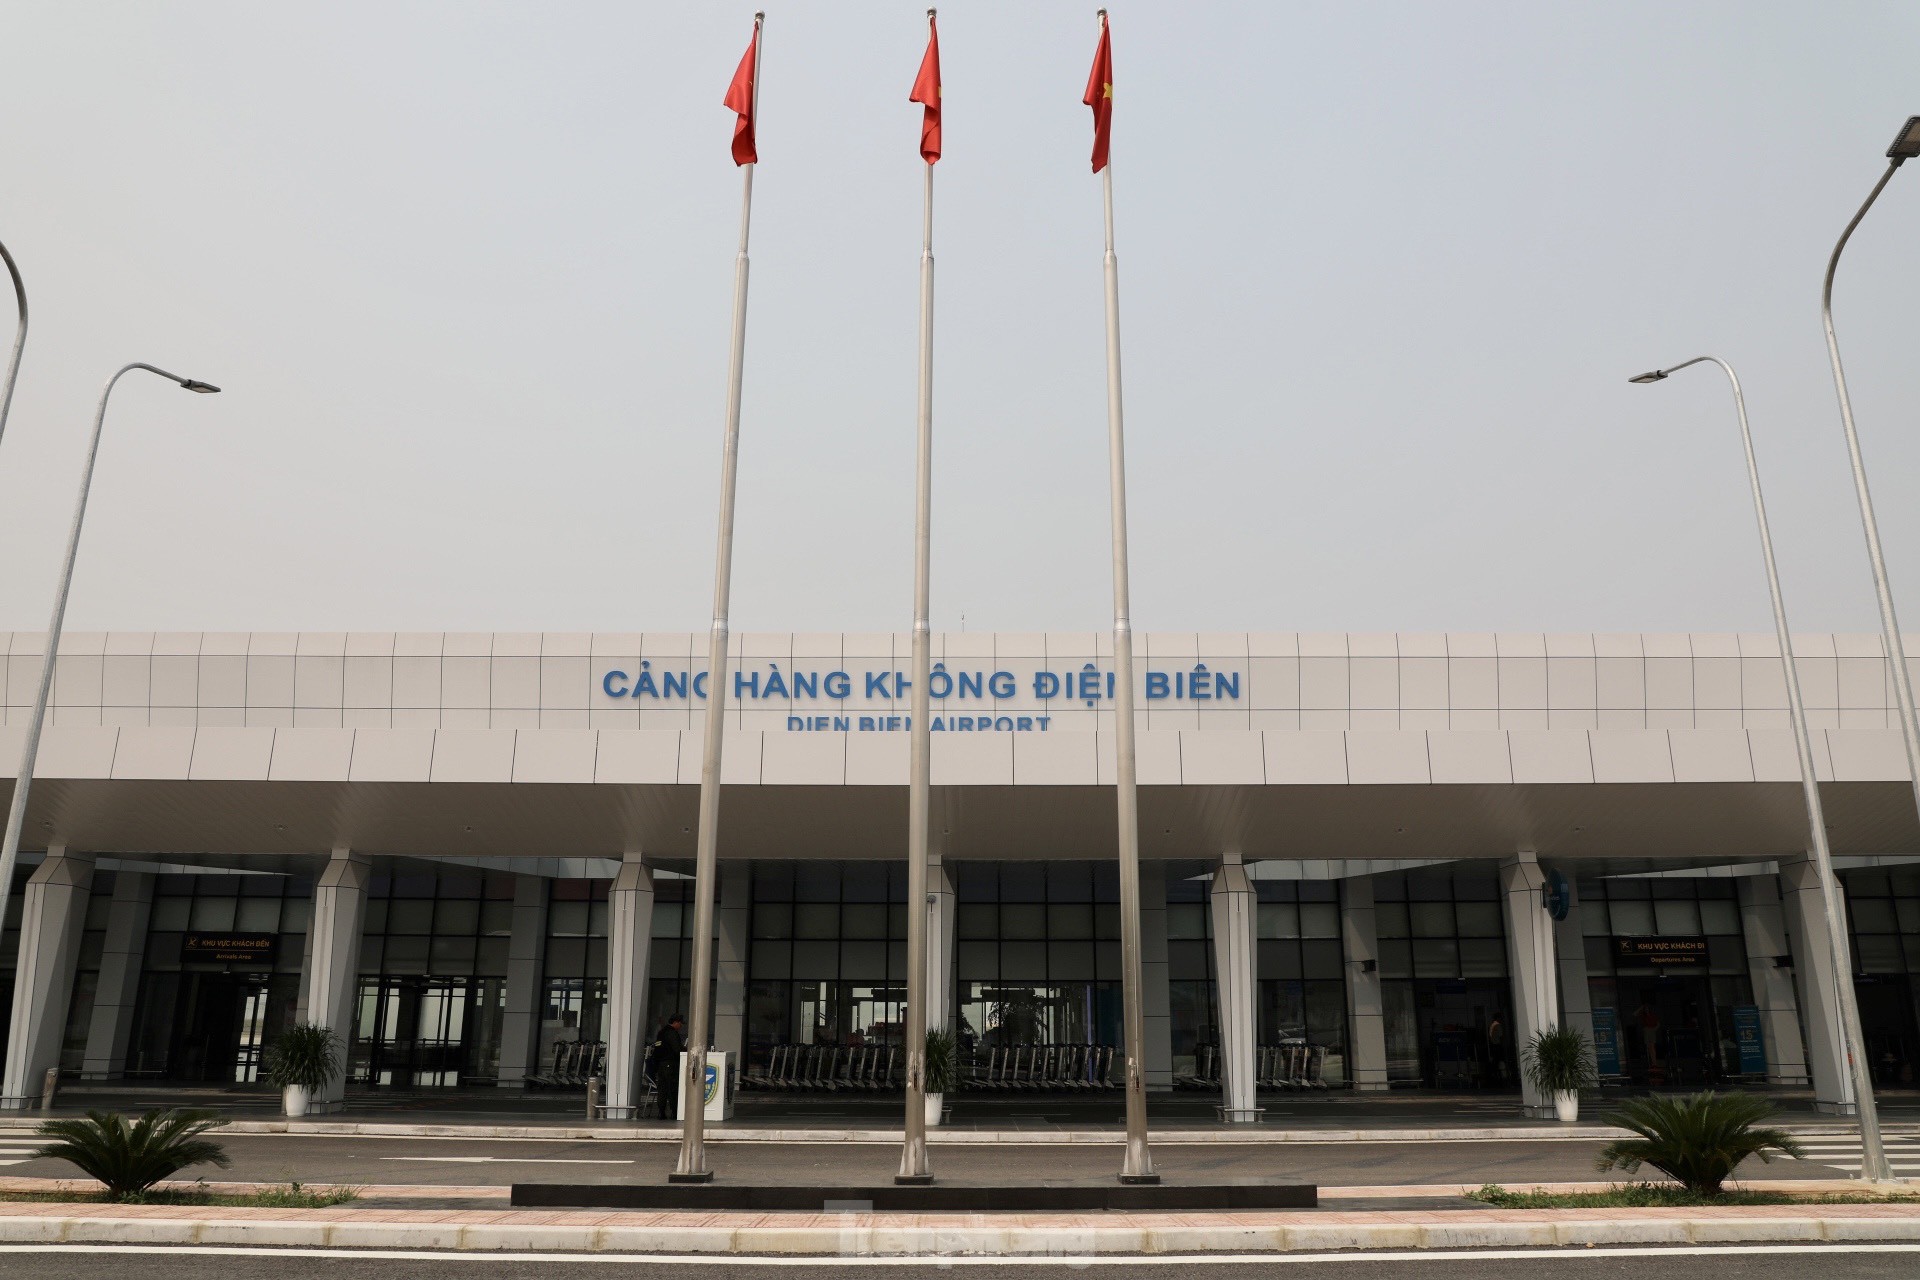 Sân bay Điện Biên: Từ phi trường khốc liệt đến sân bay hiện đại sau 70 năm- Ảnh 7.